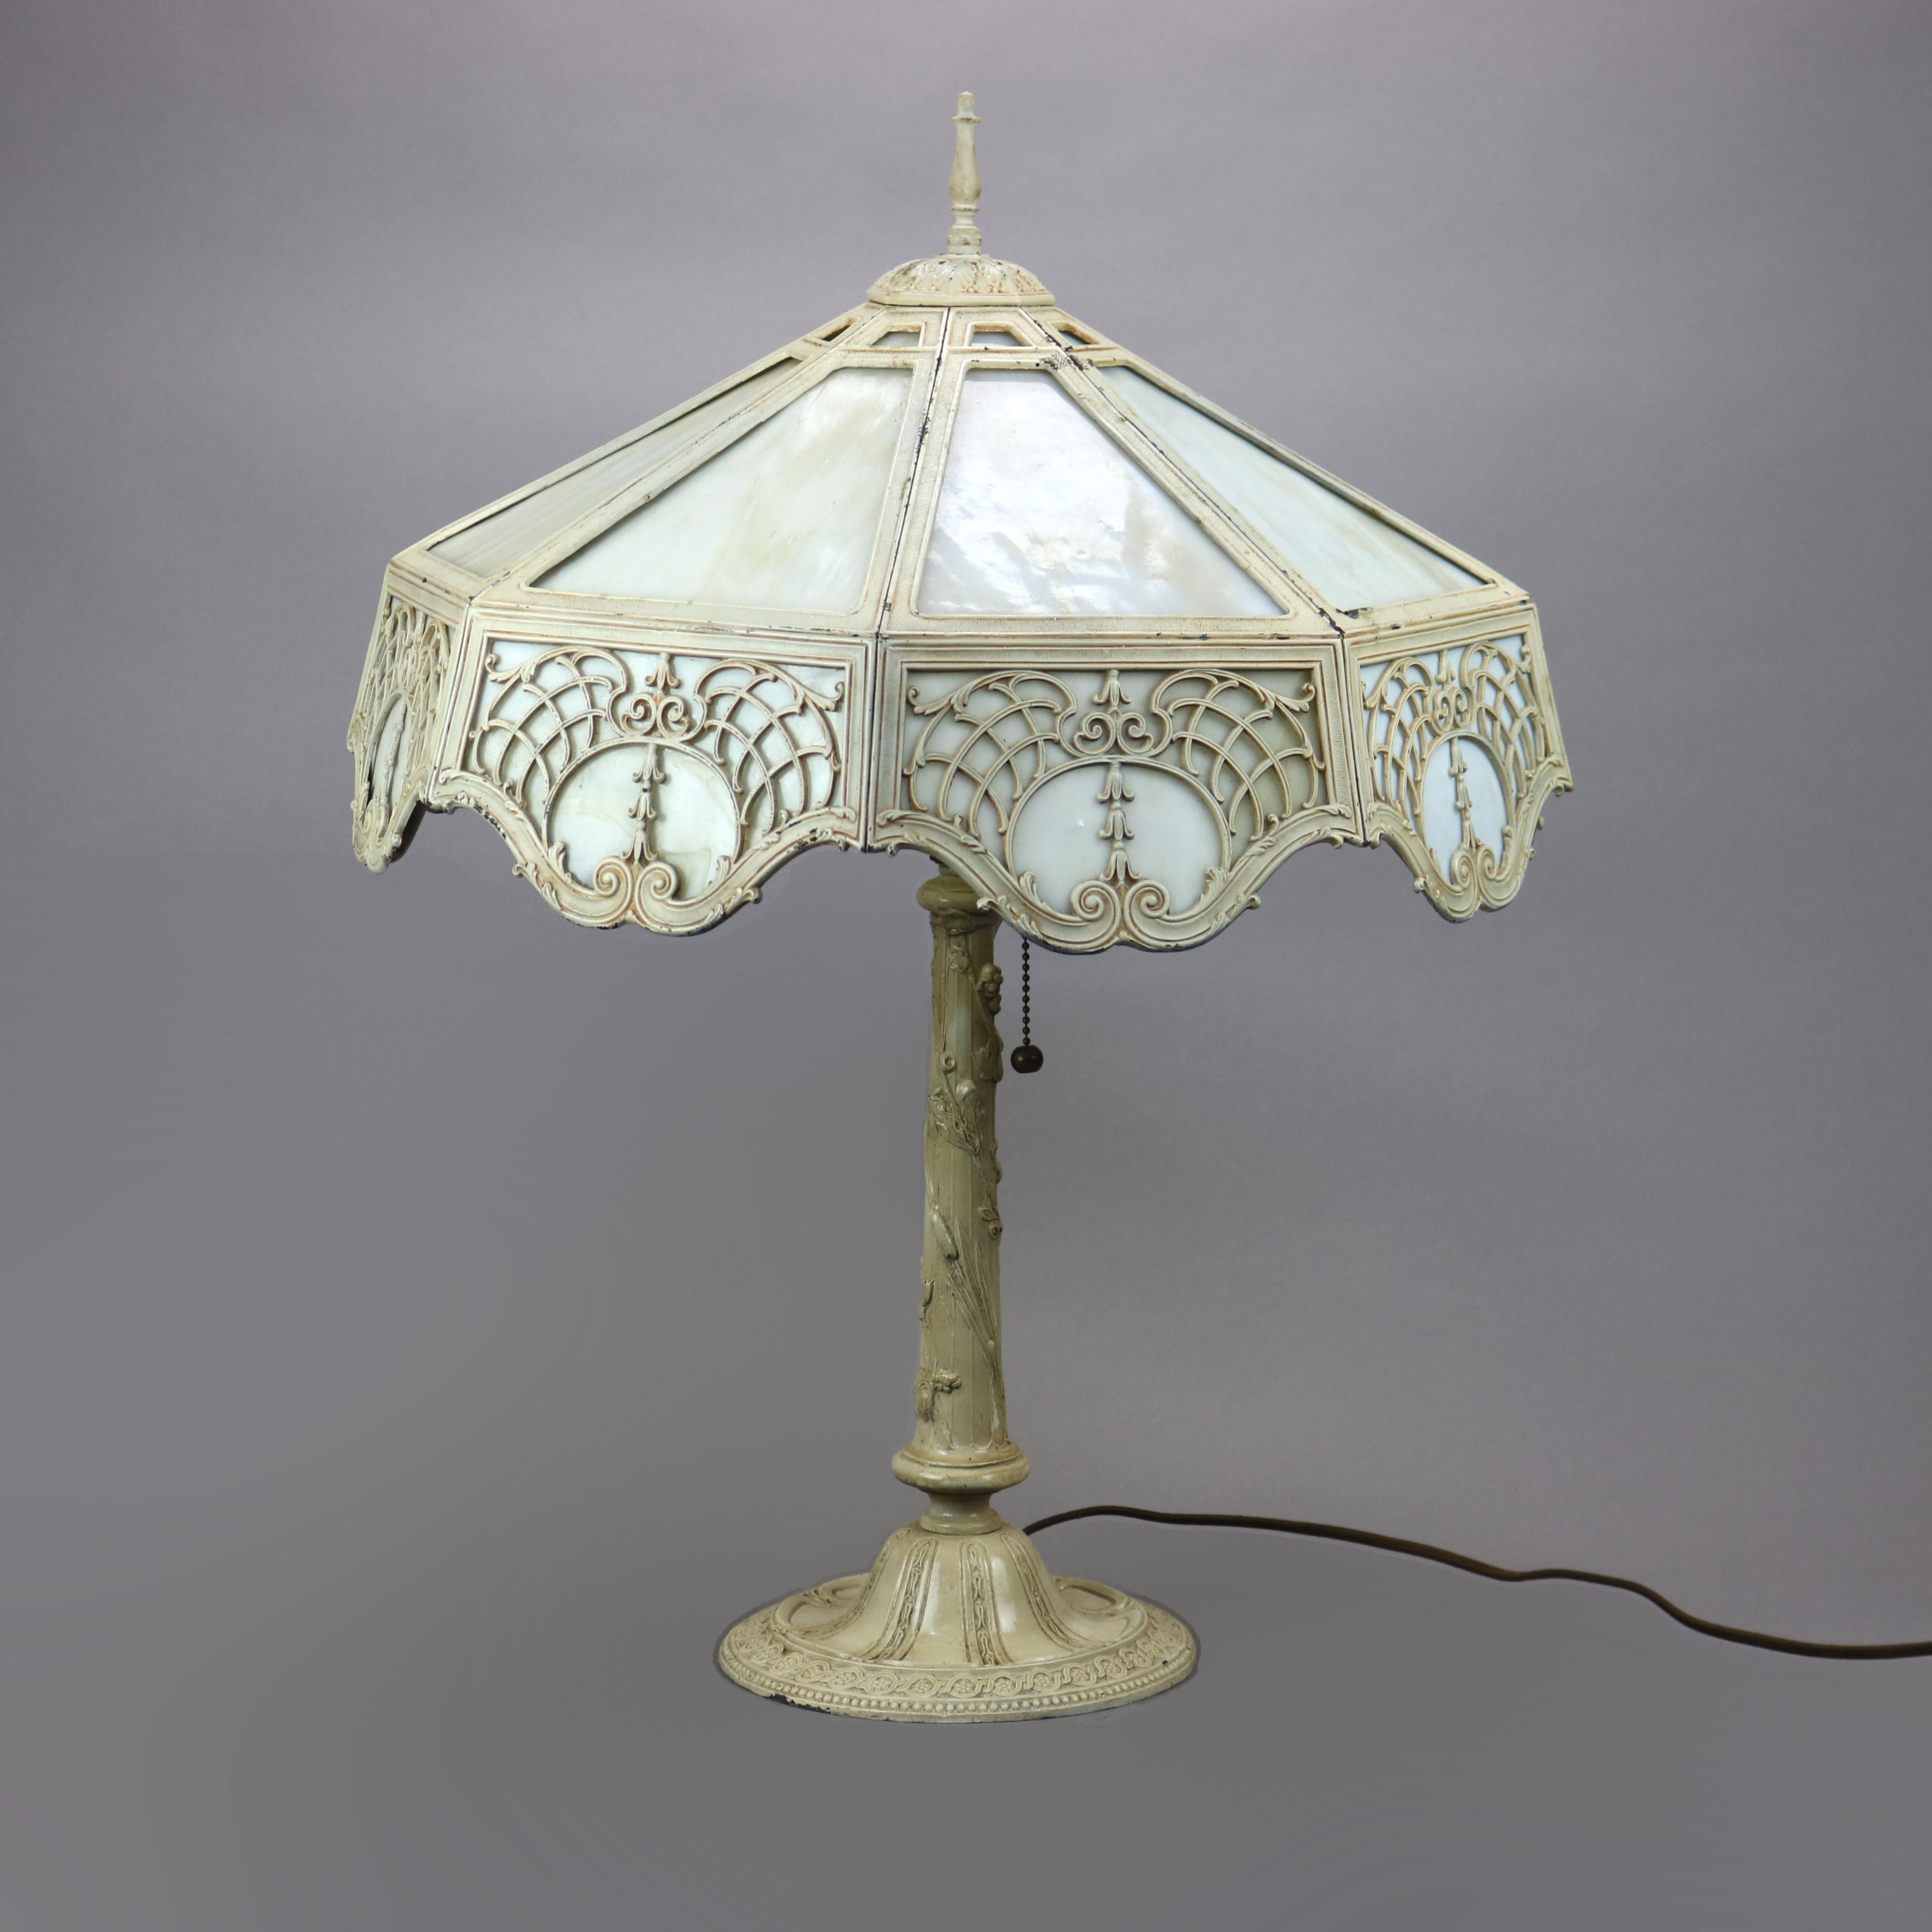 Eine antike Arts & Crafts Tischlampe in der Art von Bradley und Hubbard bietet einen gegossenen filigranen Schirm mit umgekehrter Glockenblume und verschnörkelten Blattelementen, die Schlackenglasscheiben über einem Sockel mit Blattelementen